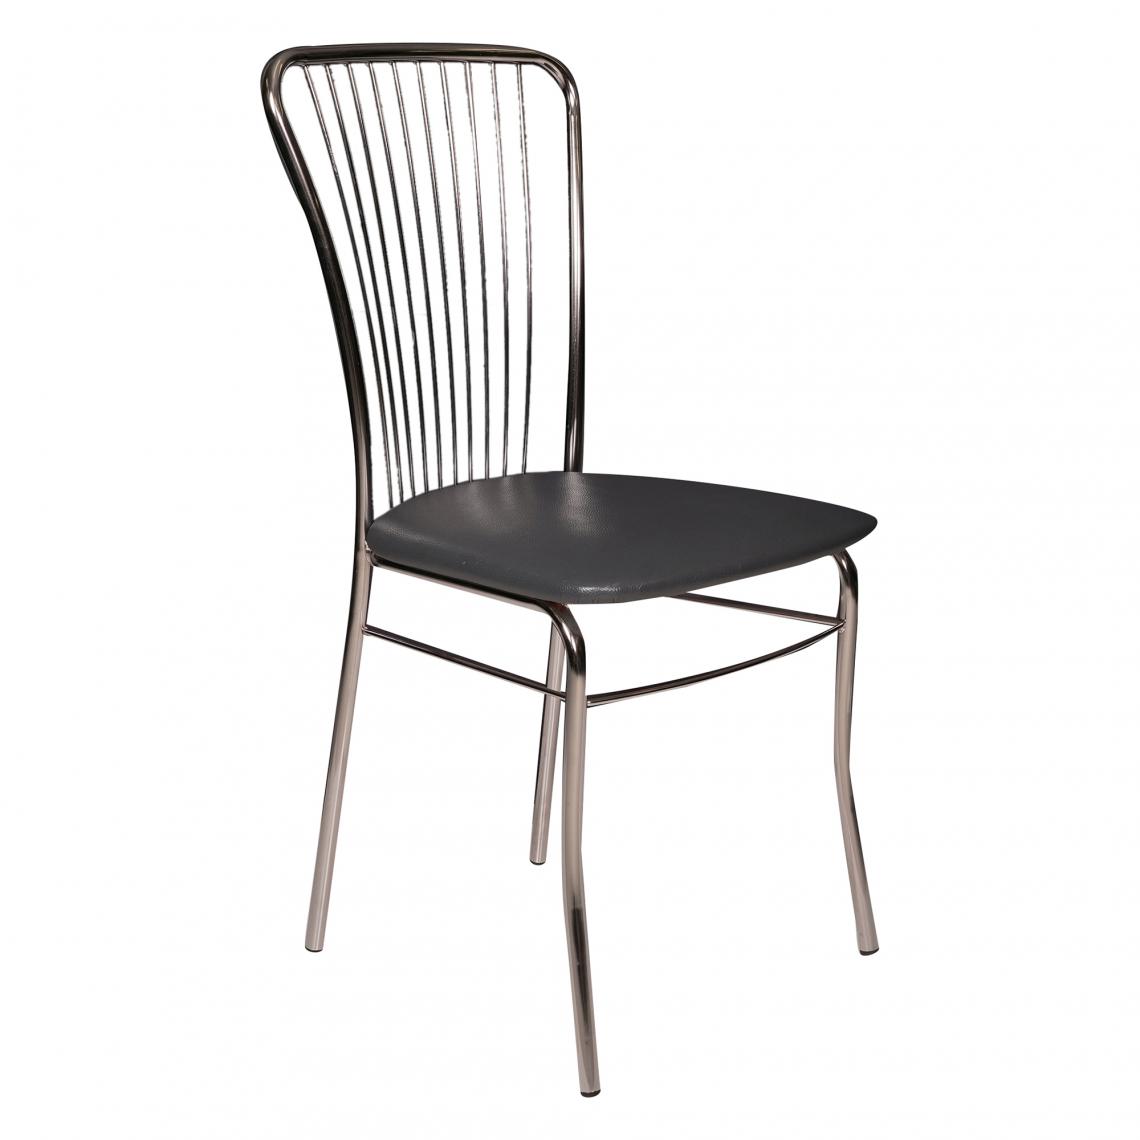 Alter - Chaise classique avec assise en éco-cuir, structure en métal chromé, Fauteuil de salle à manger, 54x45h93 cm, couleur noire - Chaises